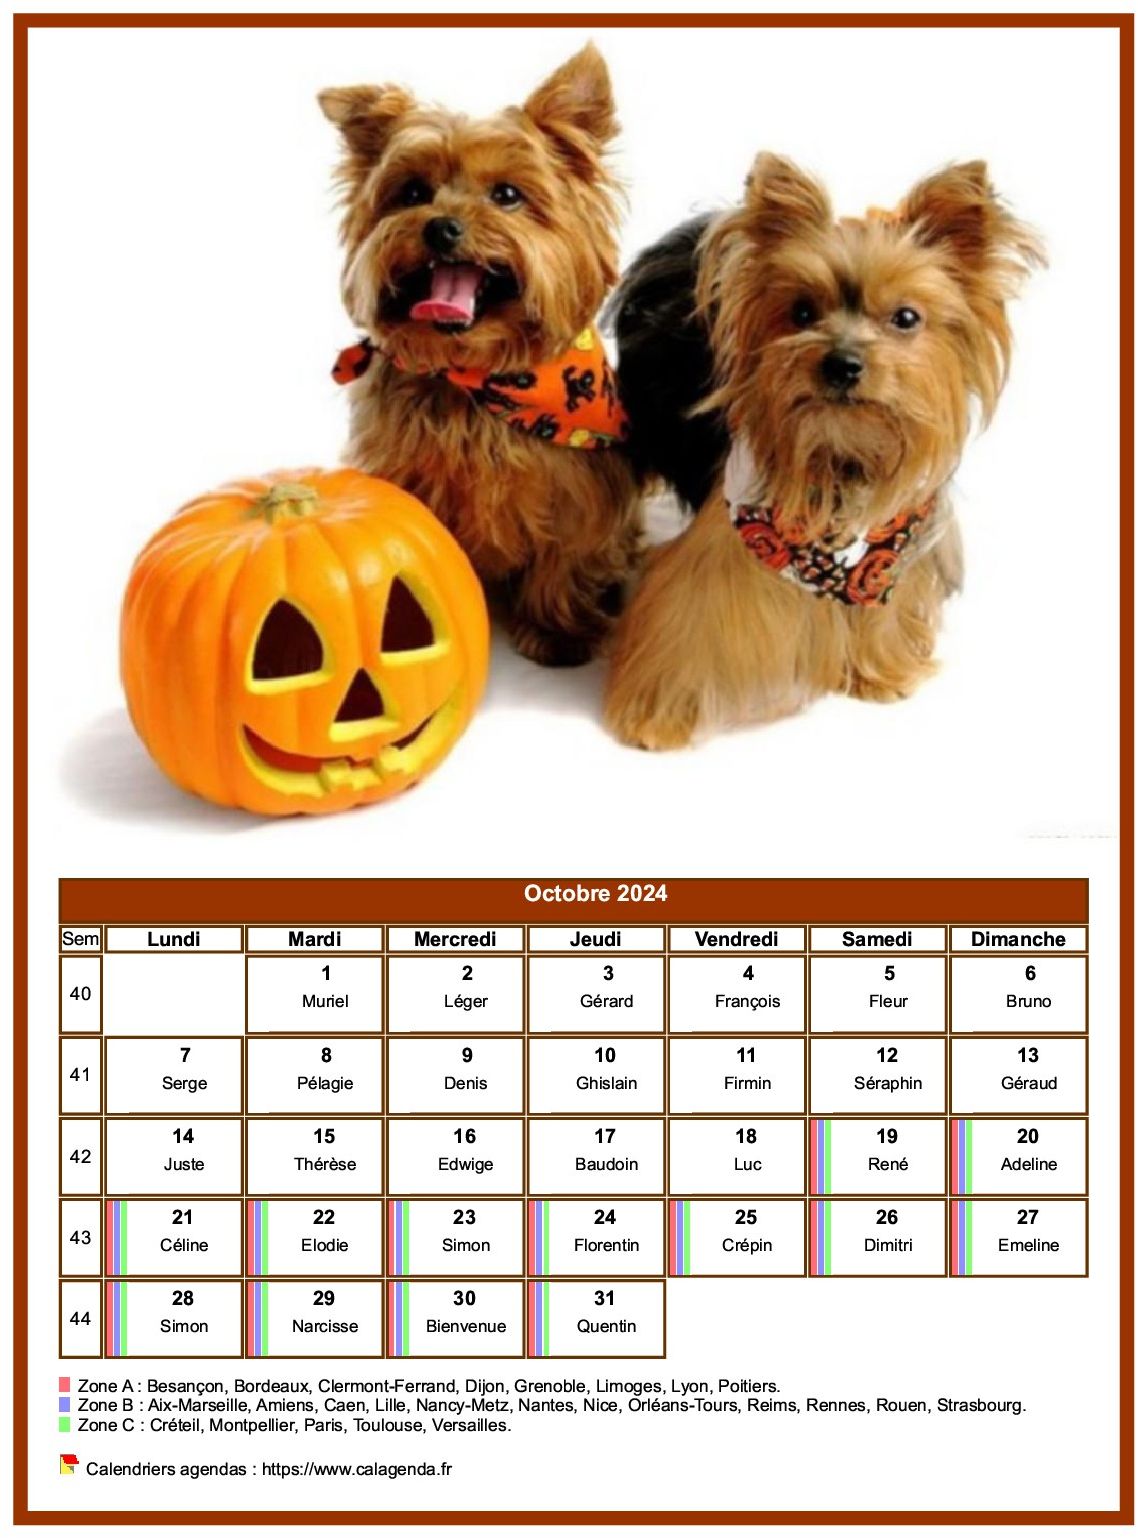 Calendrier octobre chiens